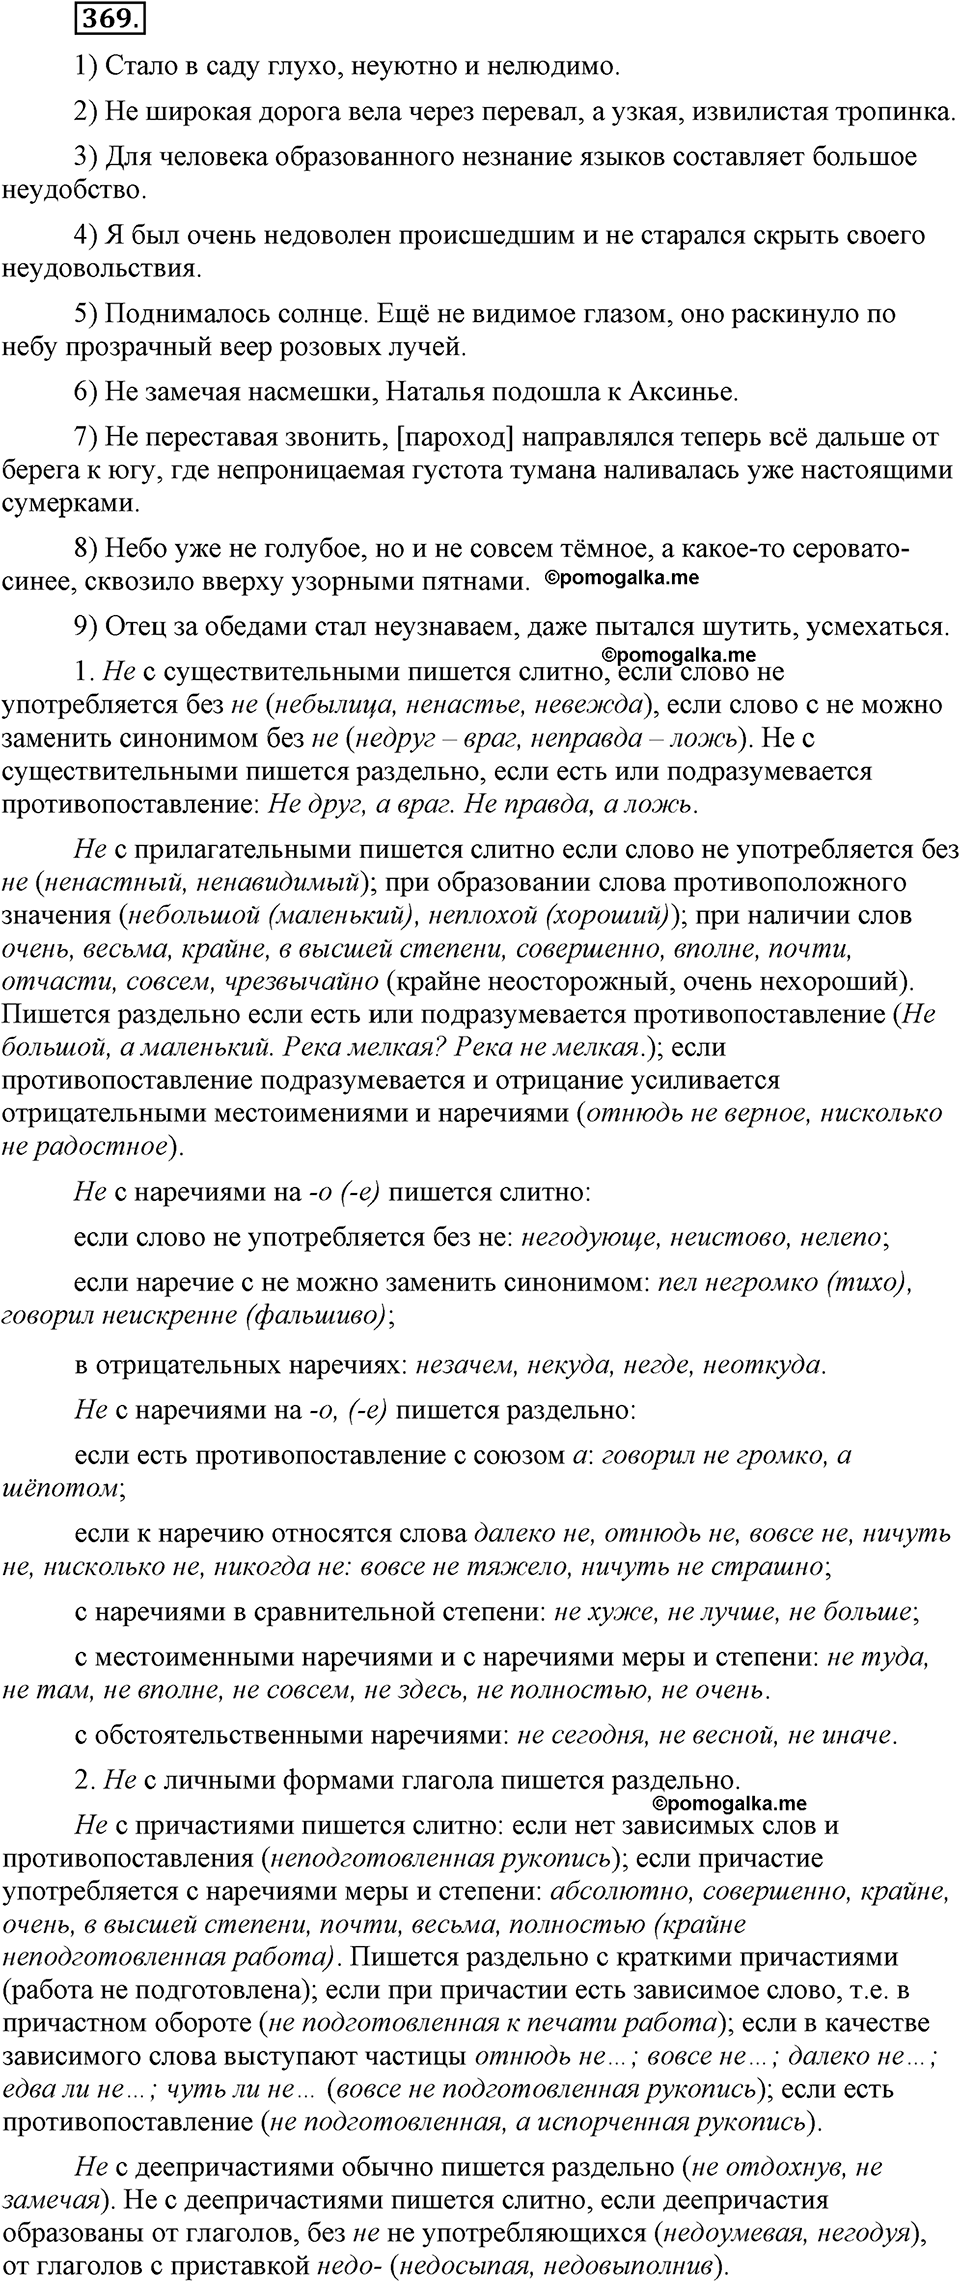 страница 166 номер 369 русский язык 9 класс Бархударов 2011 год